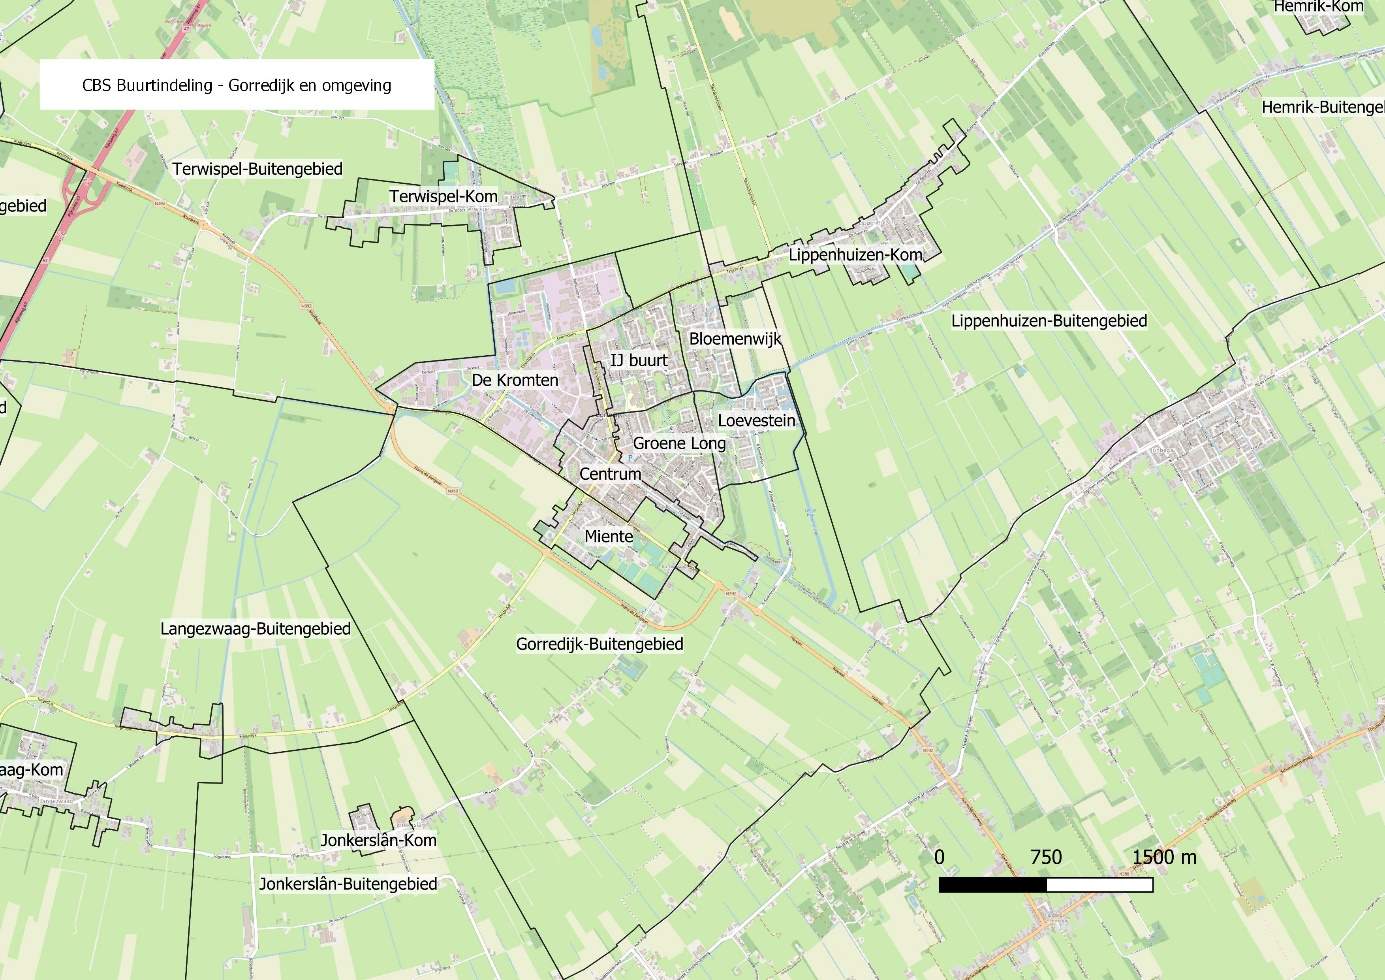 CBS-buurtindeling van Gorredijk en omgeving.